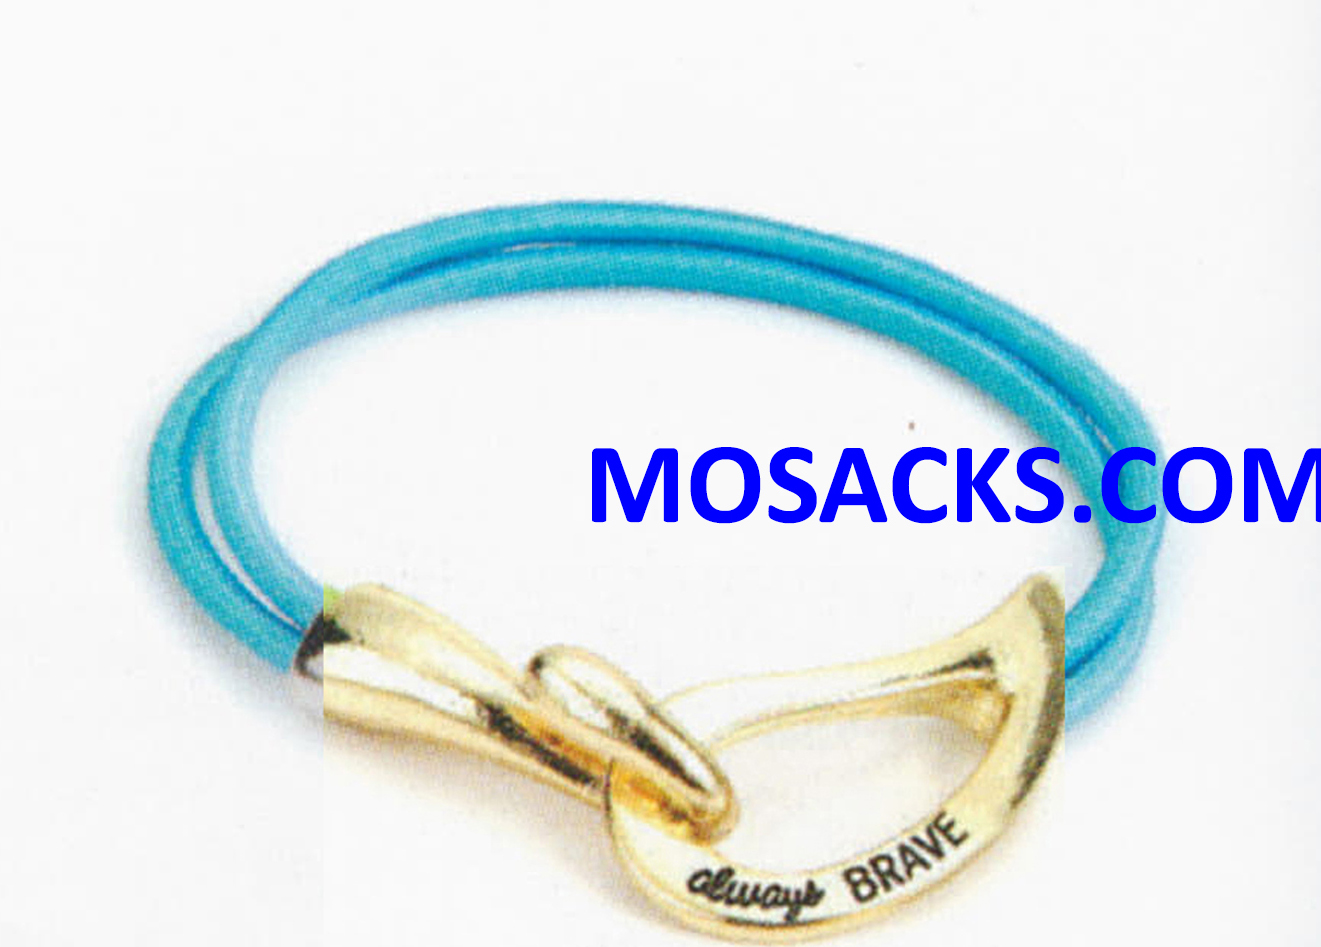 Alexa's Angels Always Brave Cancer Awareness Bracelet Gold Teal 452-220850